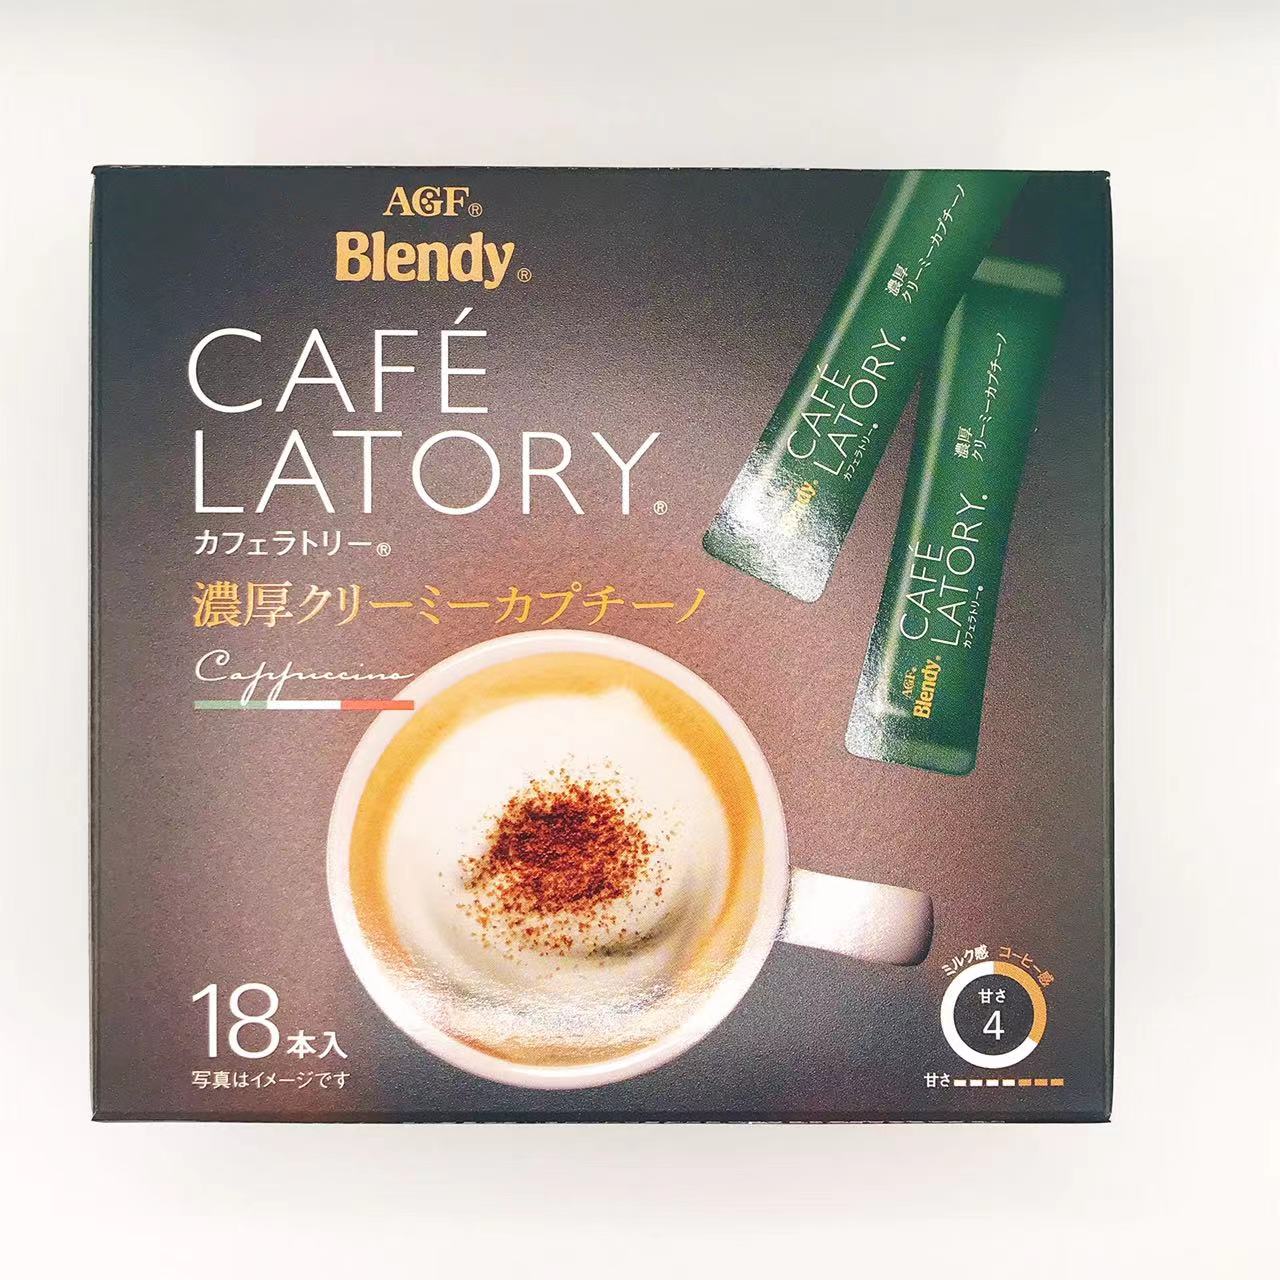 味之素AGF Blendy AGF Brendy Cafe Ratery Stick Coffee豐富的Creaty Capp Cape（11.5g * 18）